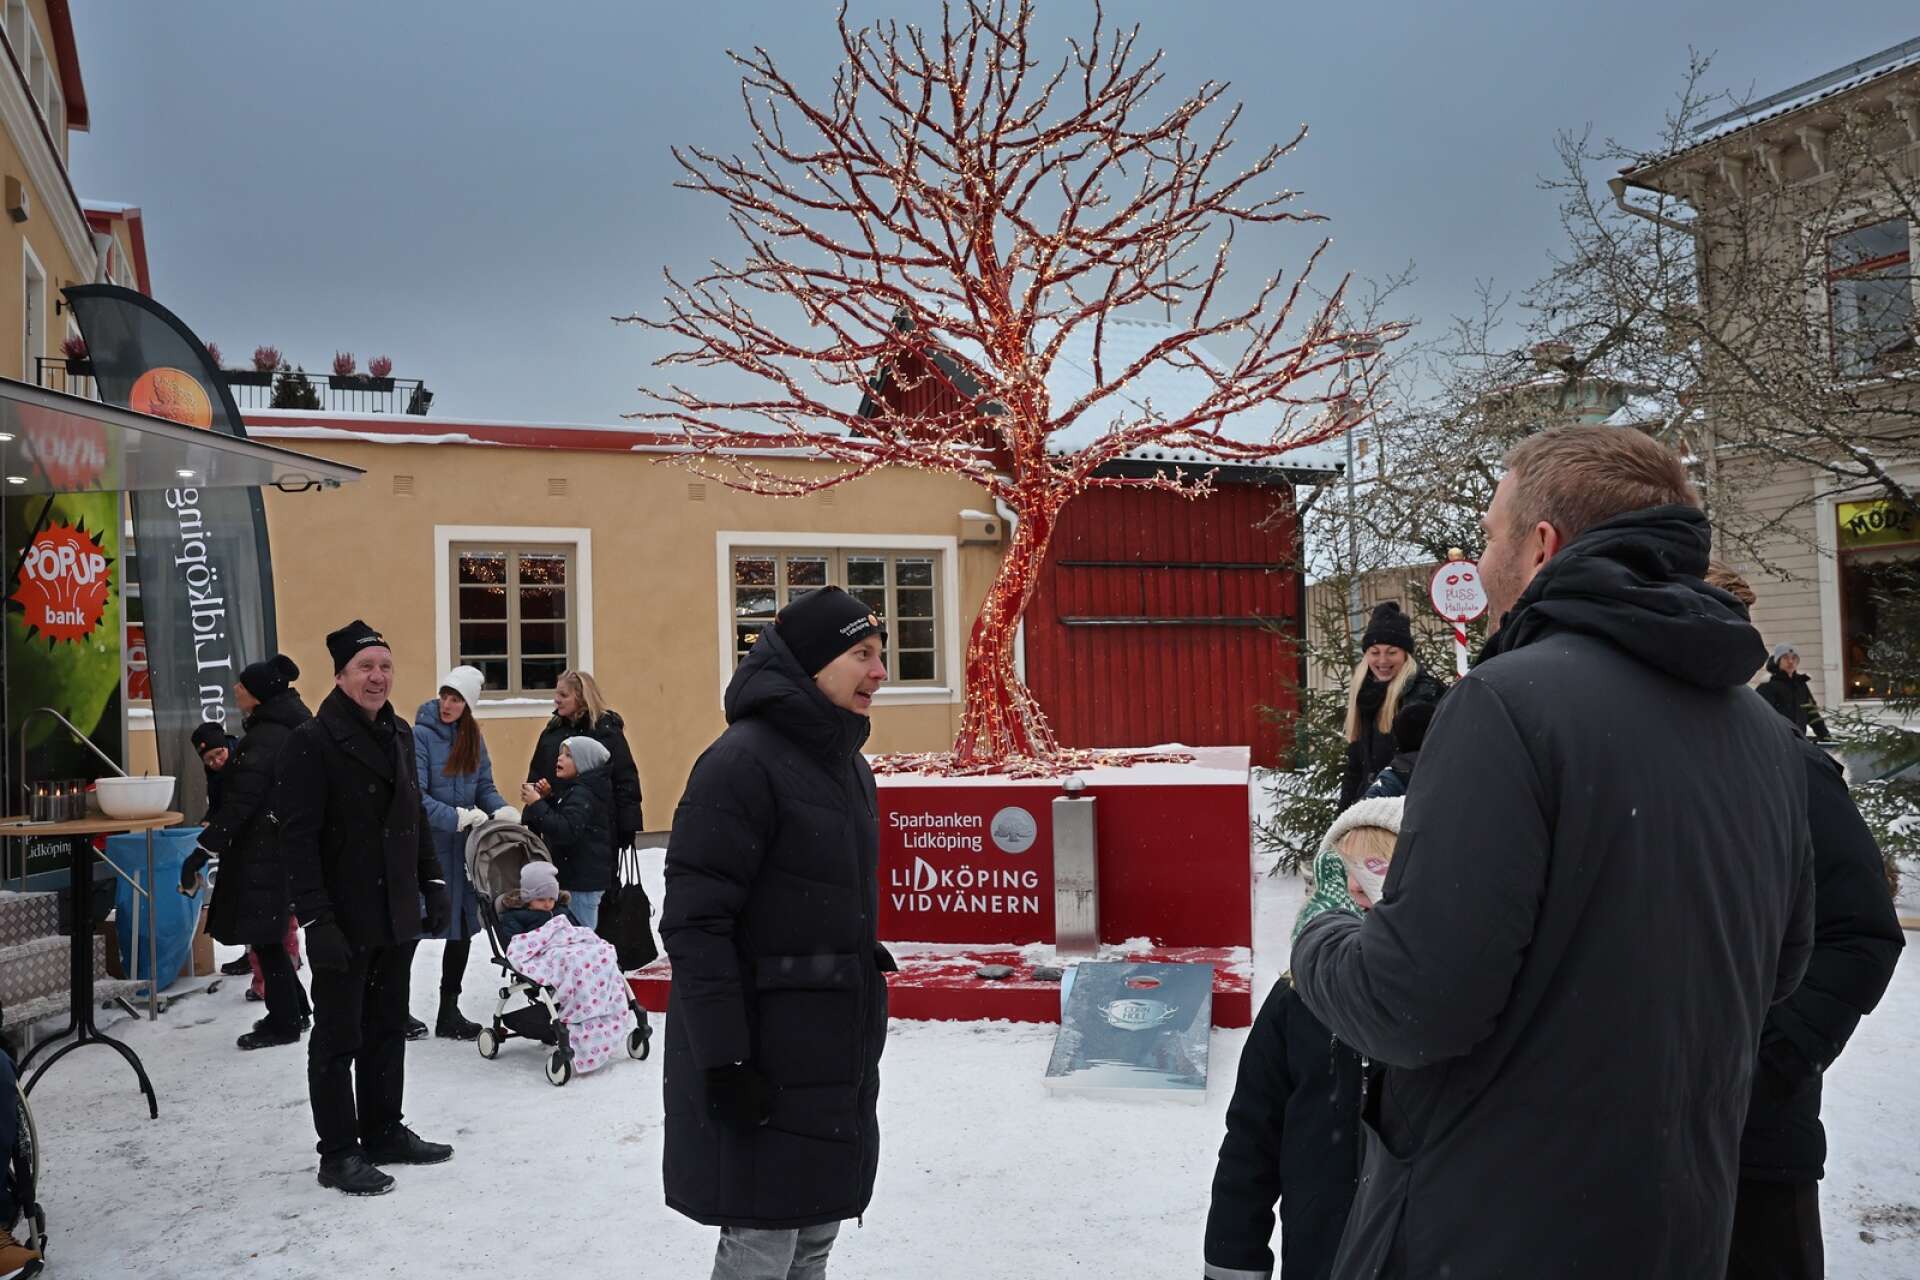 Sparbanken i Lidköping ansvarade för sista hållplatsen av julresan i Lidköping, som ligger på Iqbaltorget där ett träd kläd i rött står i all sin prakt. 